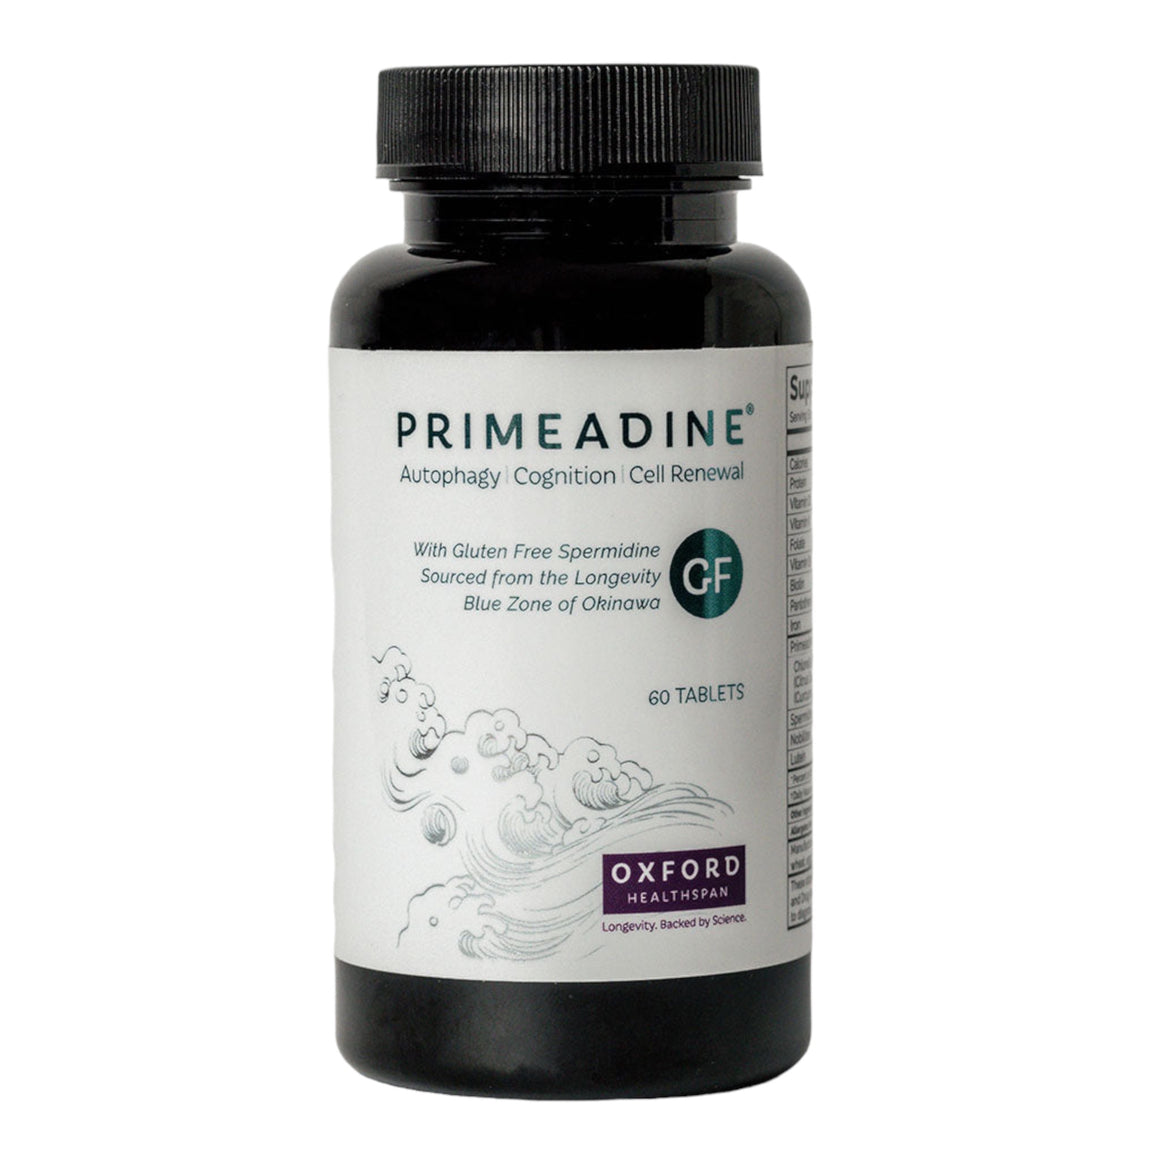 Primeadine® Gluten Free Spermidine Supplement - Oxford Healthspan